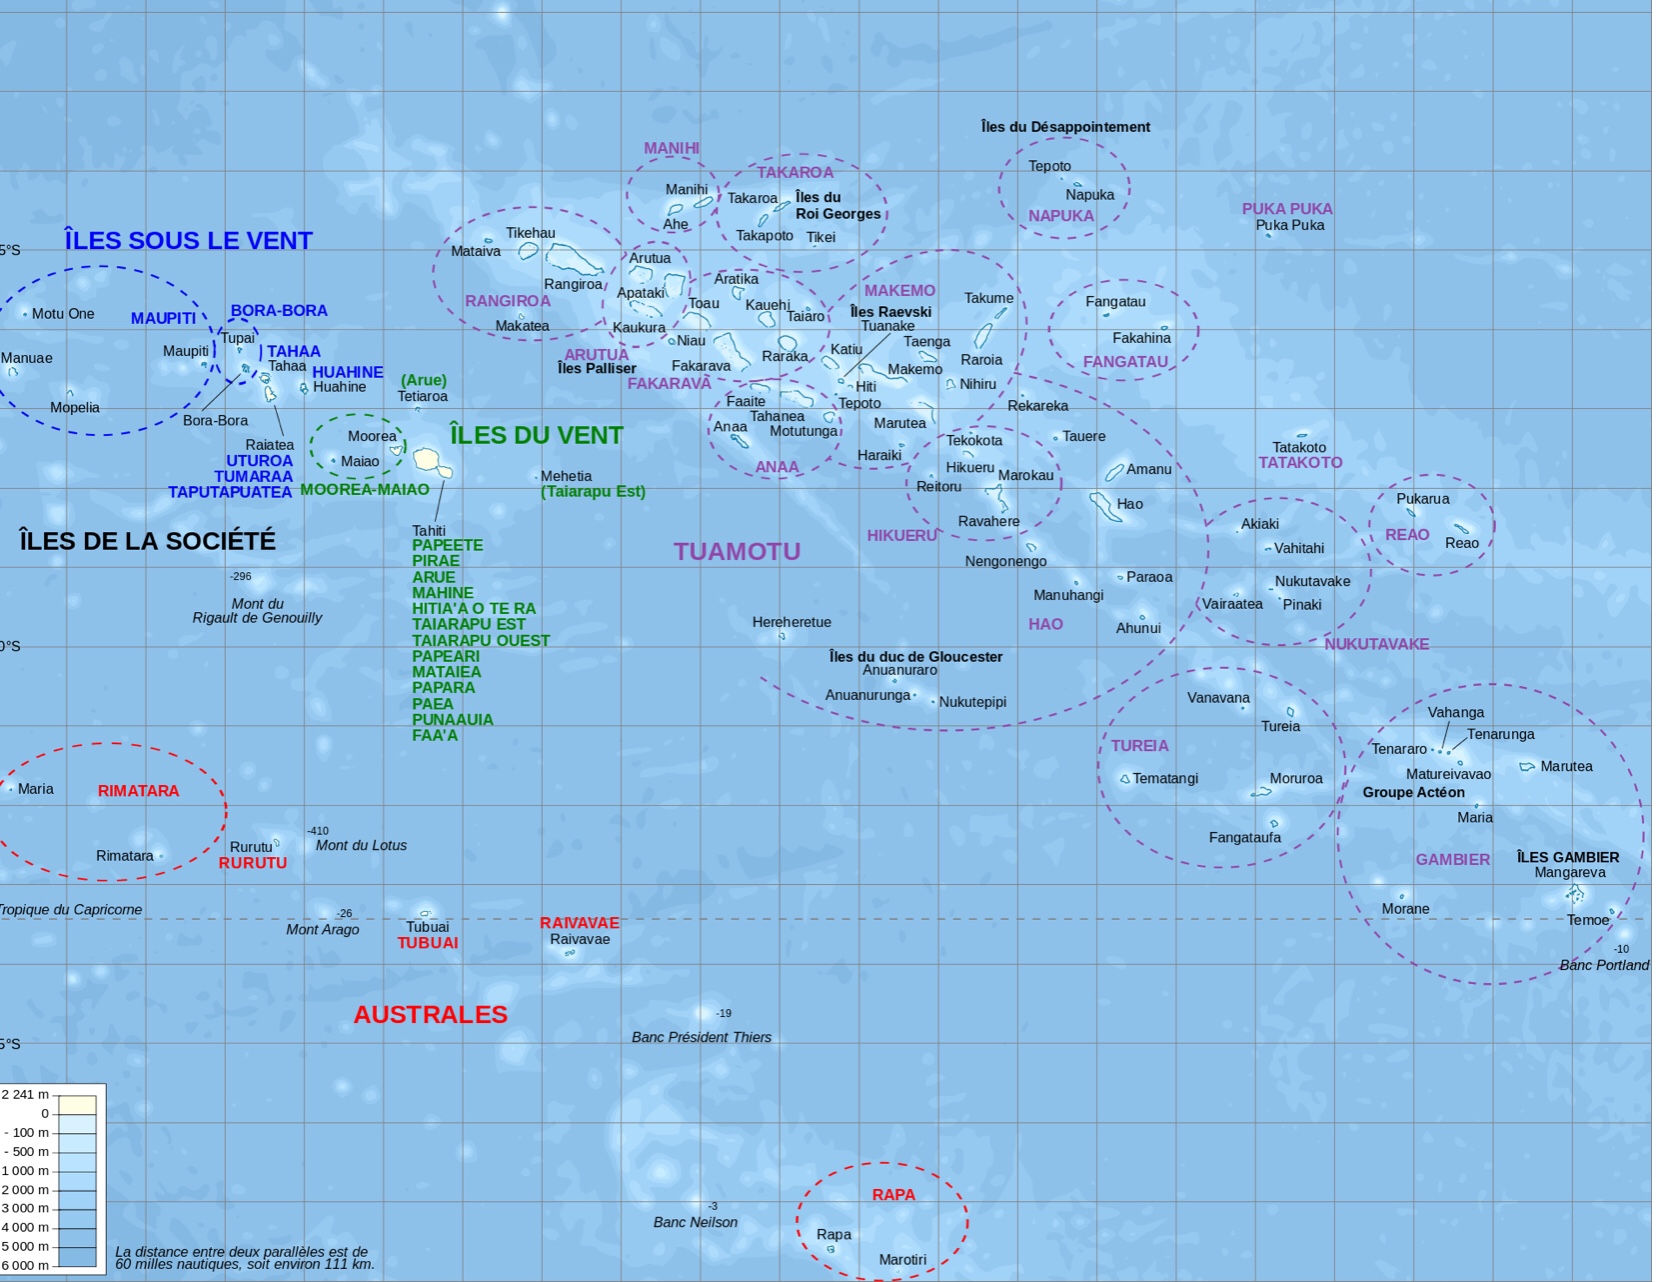 La Polynésie française comprend 5 archipels:
- Les îles de la Société
- Les Gambier
- Les Tuamotu
- Les Australes
- Les Marquises

